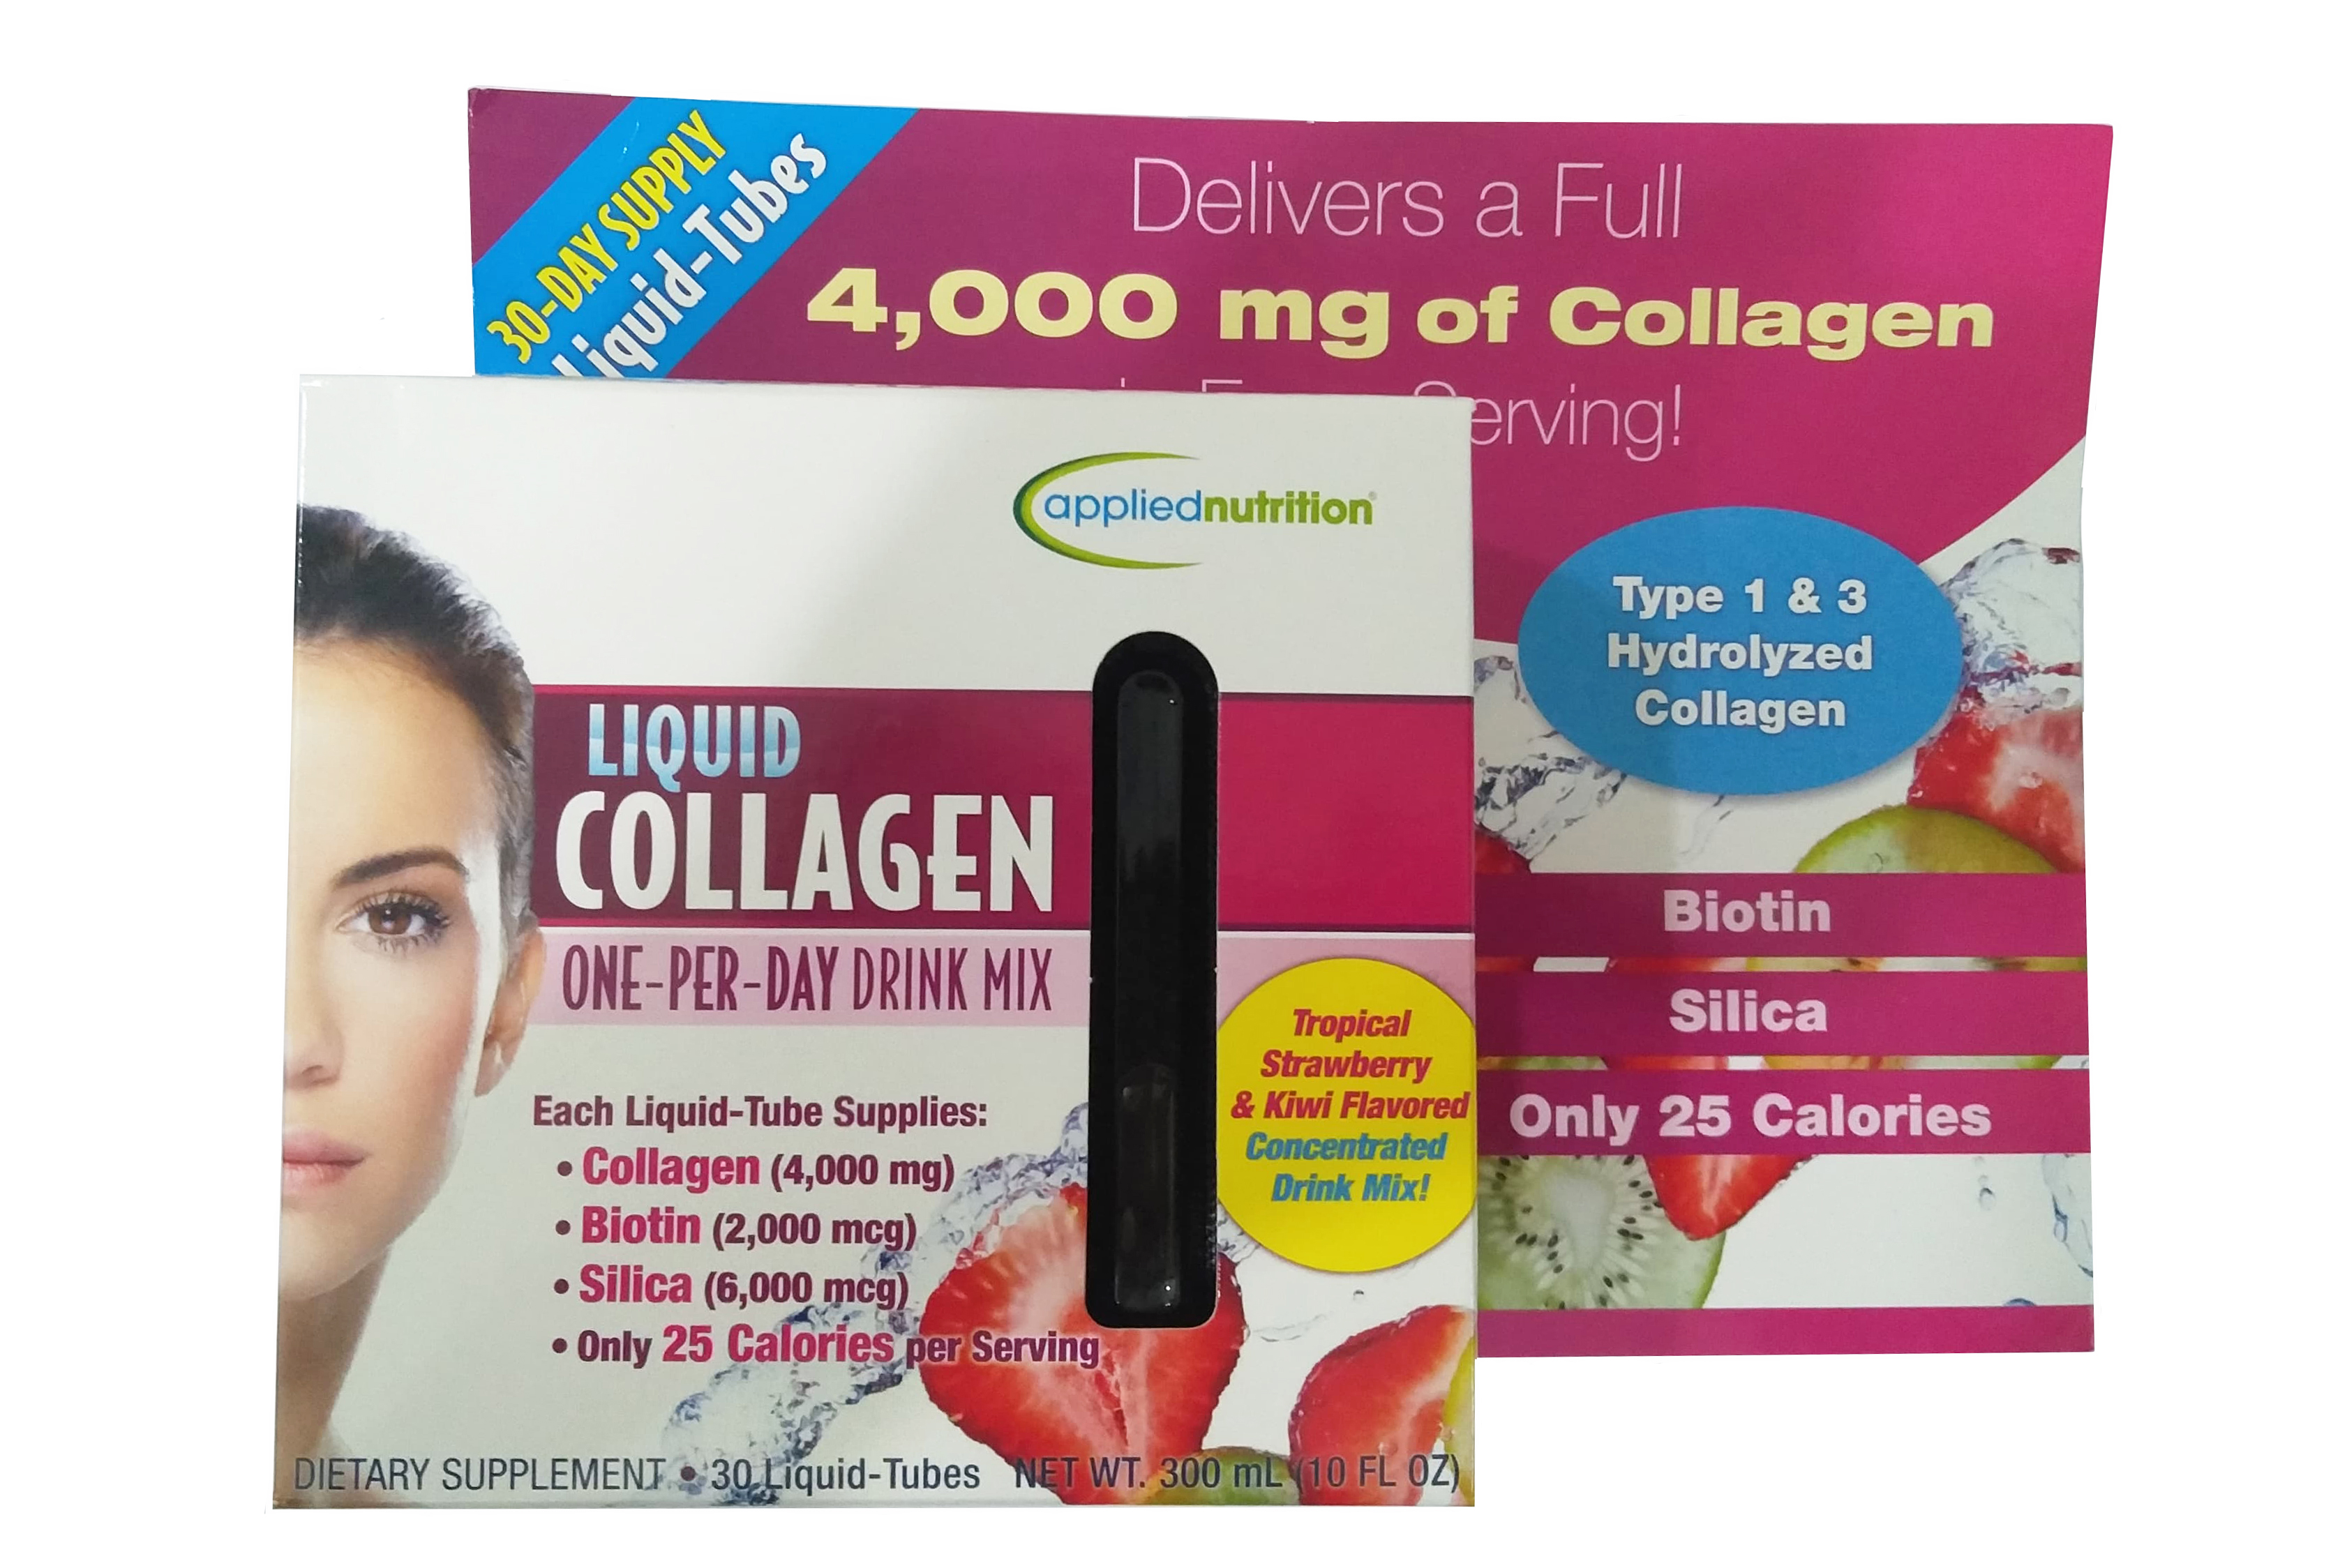 Collagen nước liquid có phải là sản phẩm tự nhiên không?
